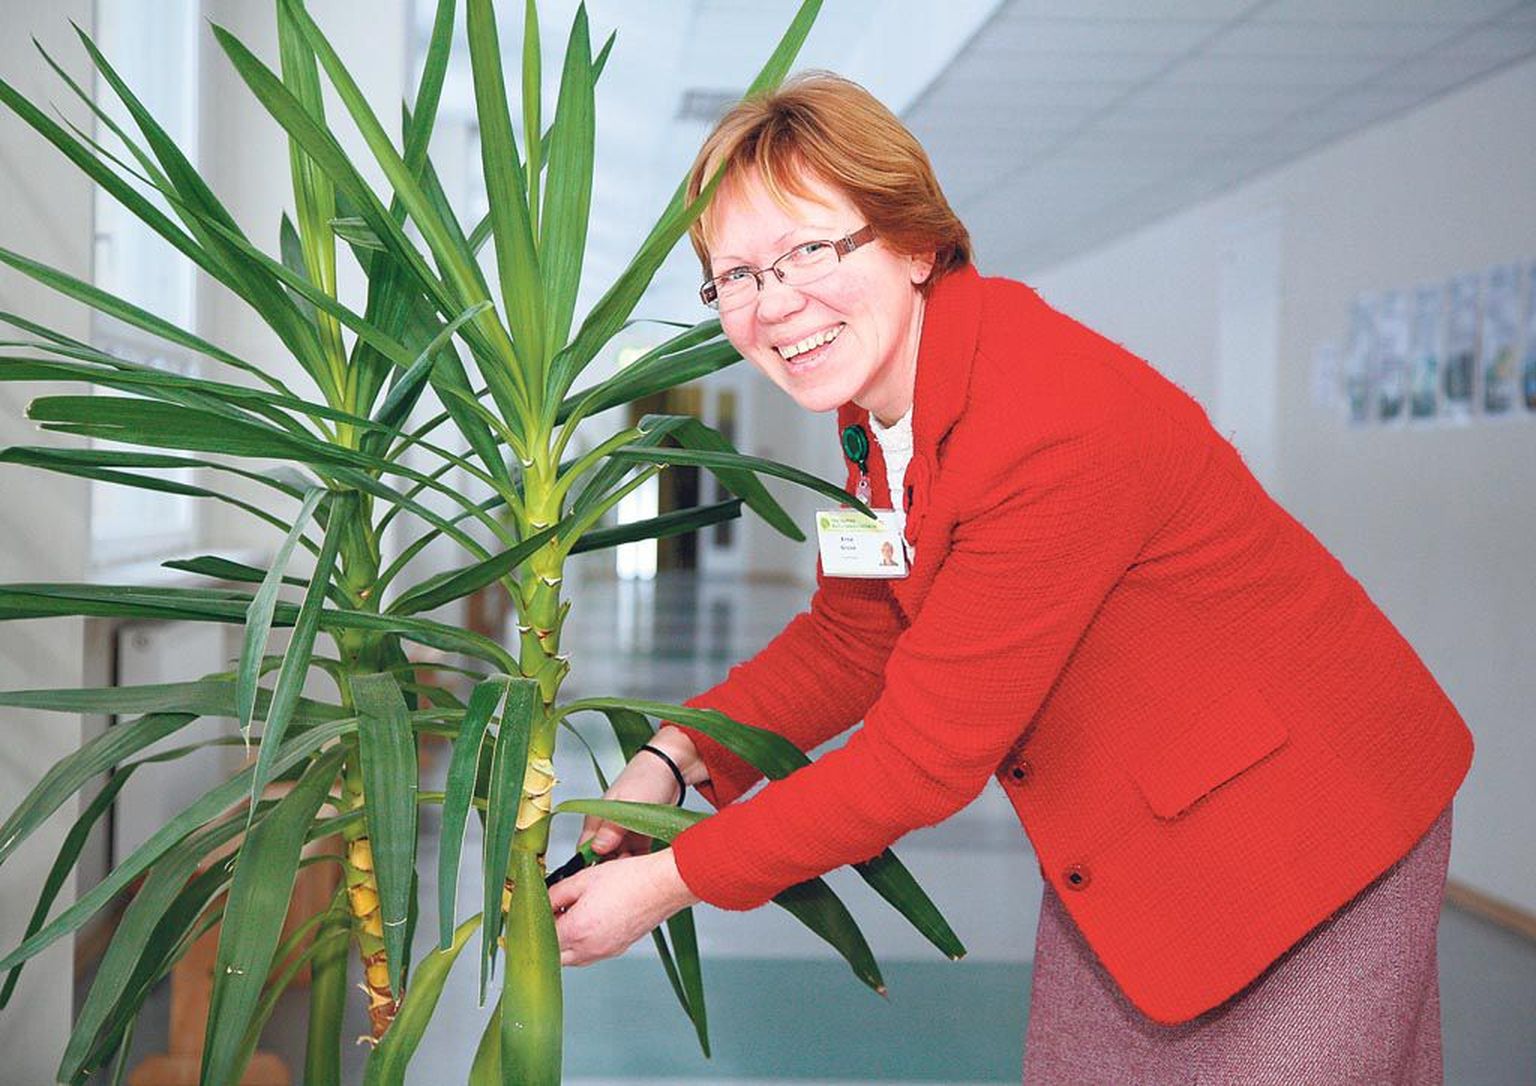 Parim maamajanduse eriala õpetaja Erna Gross annab Pärnumaa kutsehariduskeskuse Voltveti koolituskohas aianduse tunde ja sätib pikas koridoris tääkliiliat, et see oma lopsaka rohelusega mööduja silma rõõmustaks.